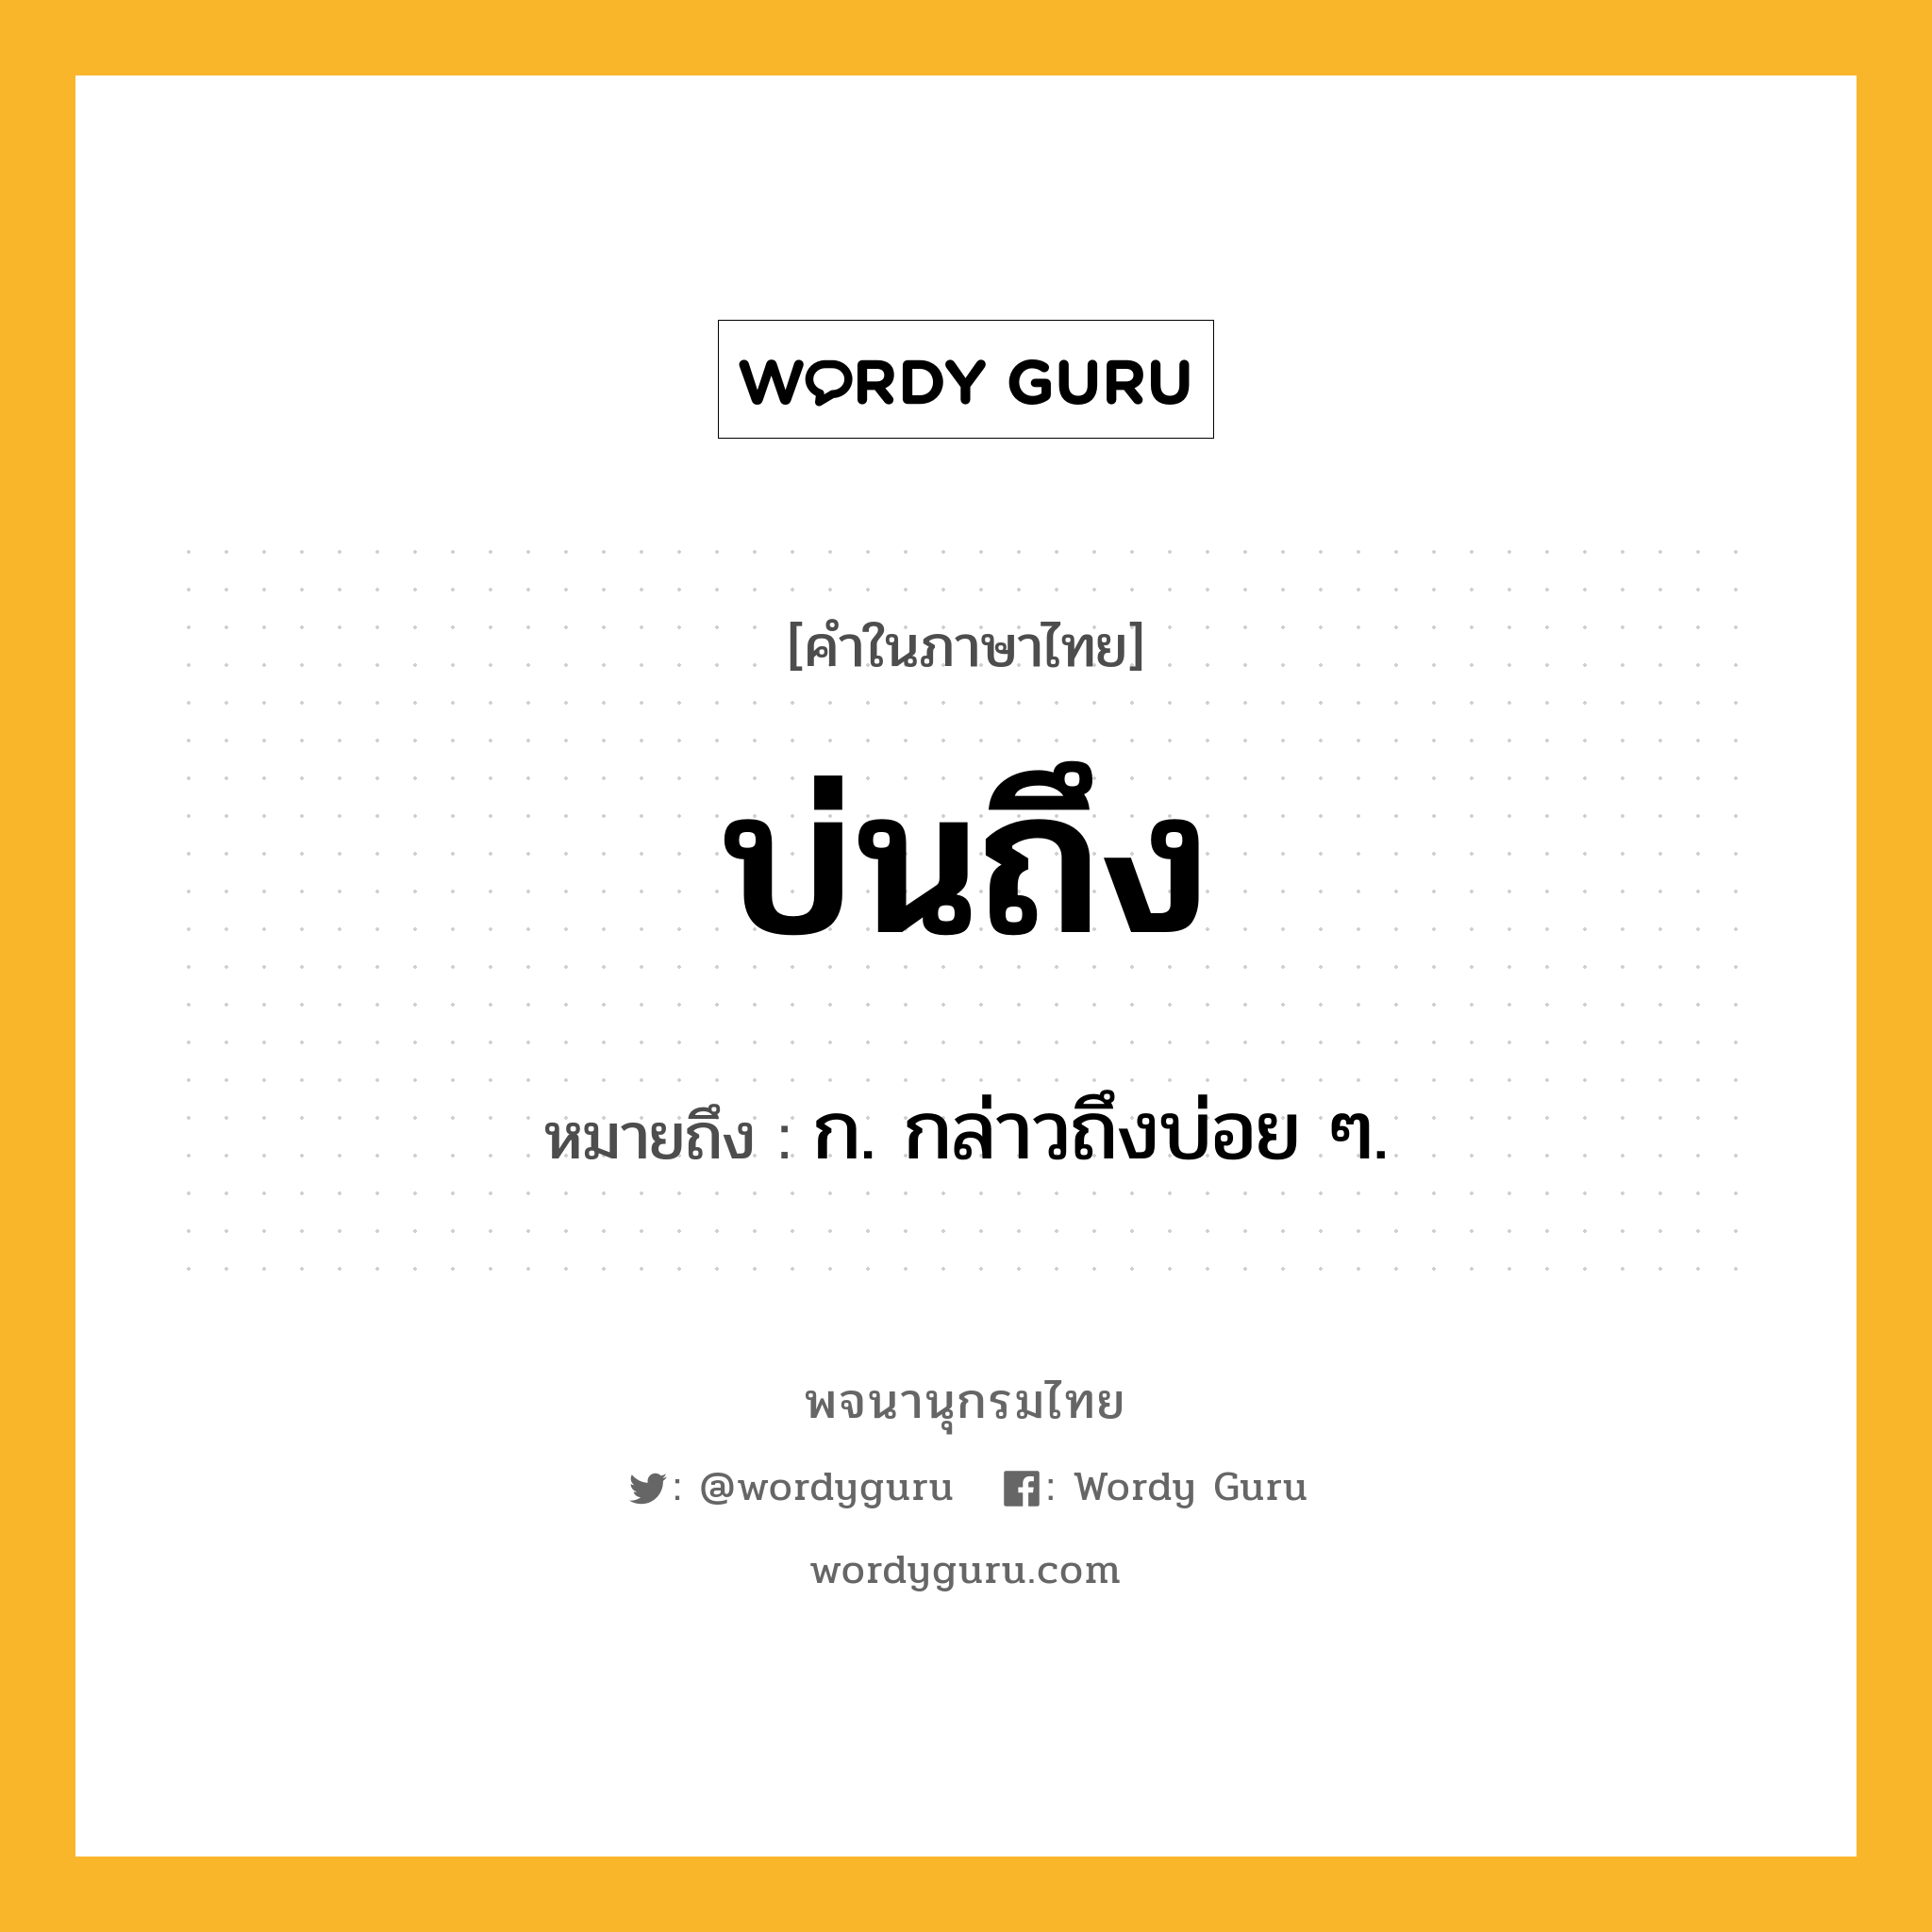 บ่นถึง หมายถึงอะไร?, คำในภาษาไทย บ่นถึง หมายถึง ก. กล่าวถึงบ่อย ๆ.